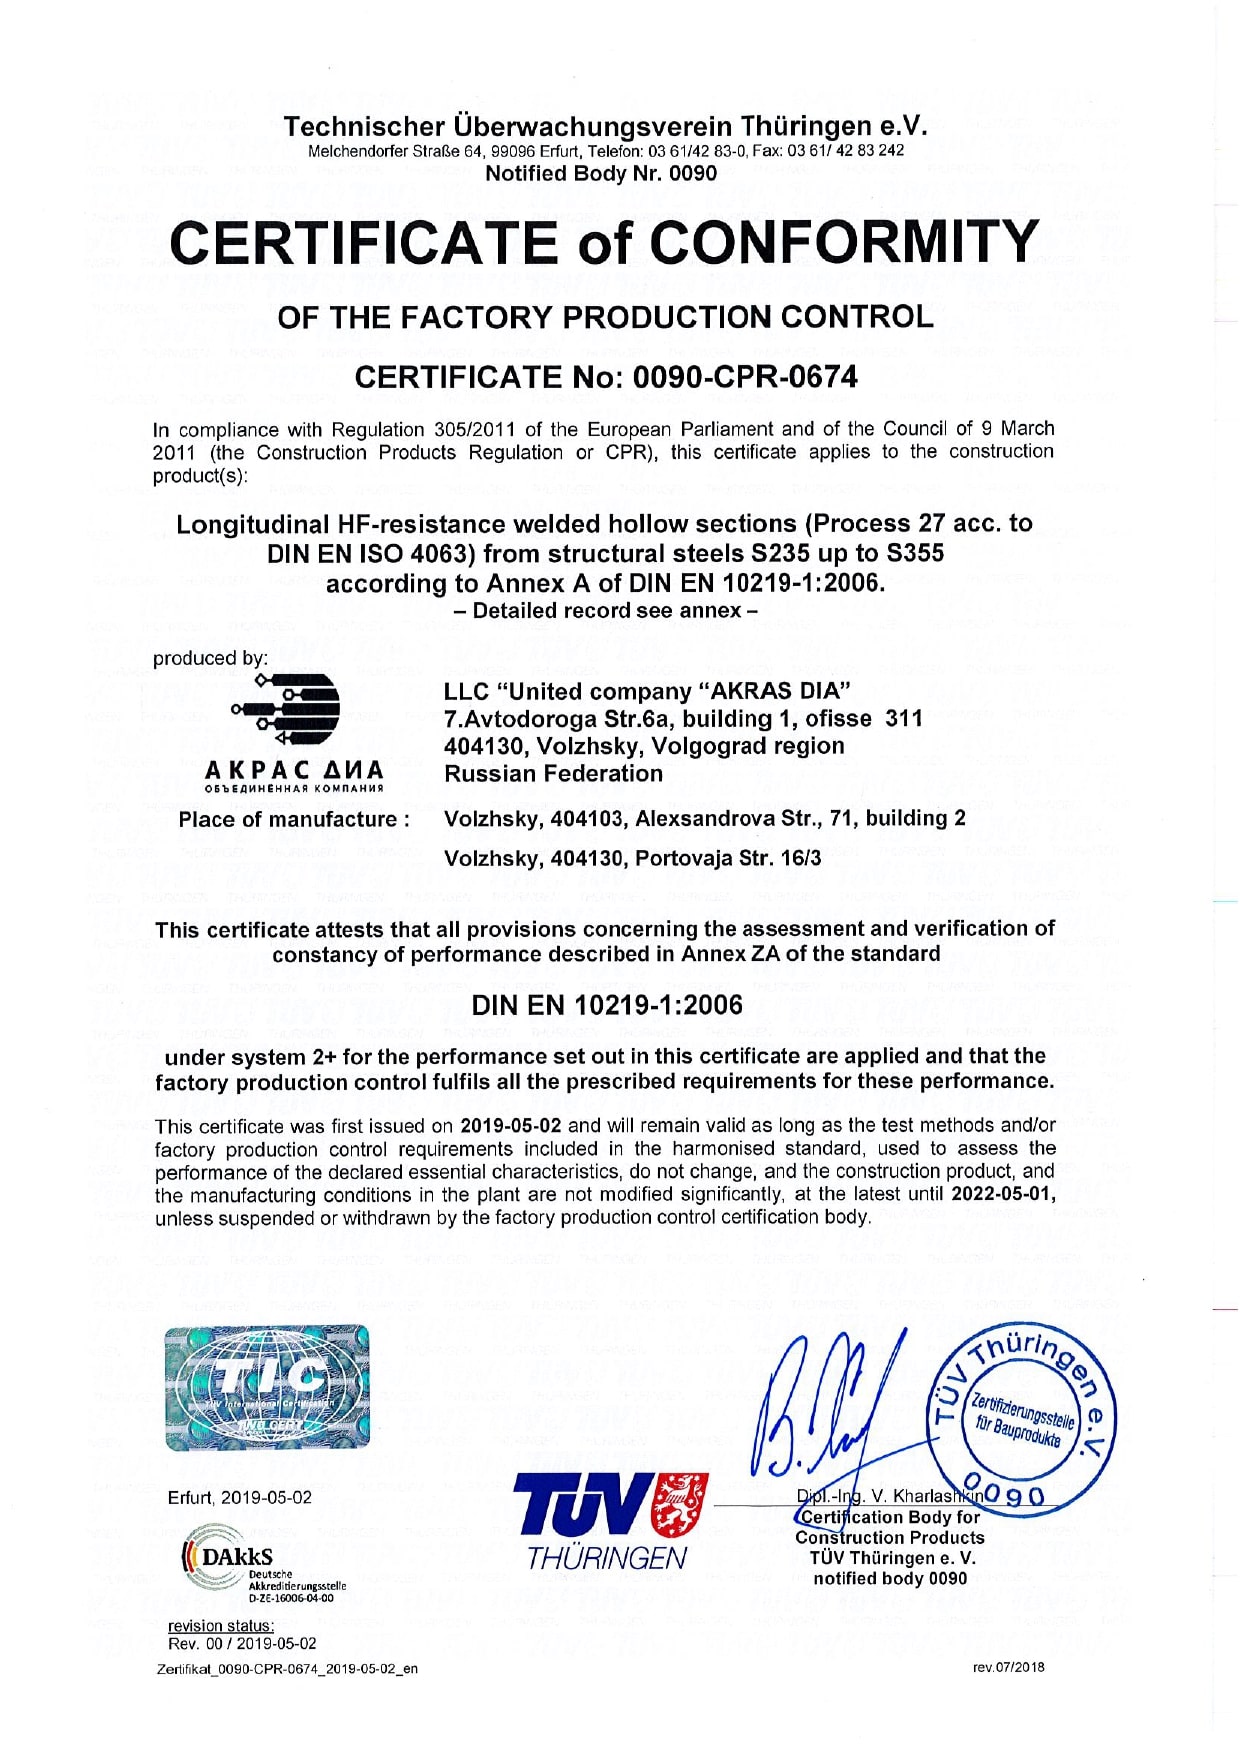 Сертификат соответствия внутреннего производственного контроля № 0090-CPR-0674 (en)